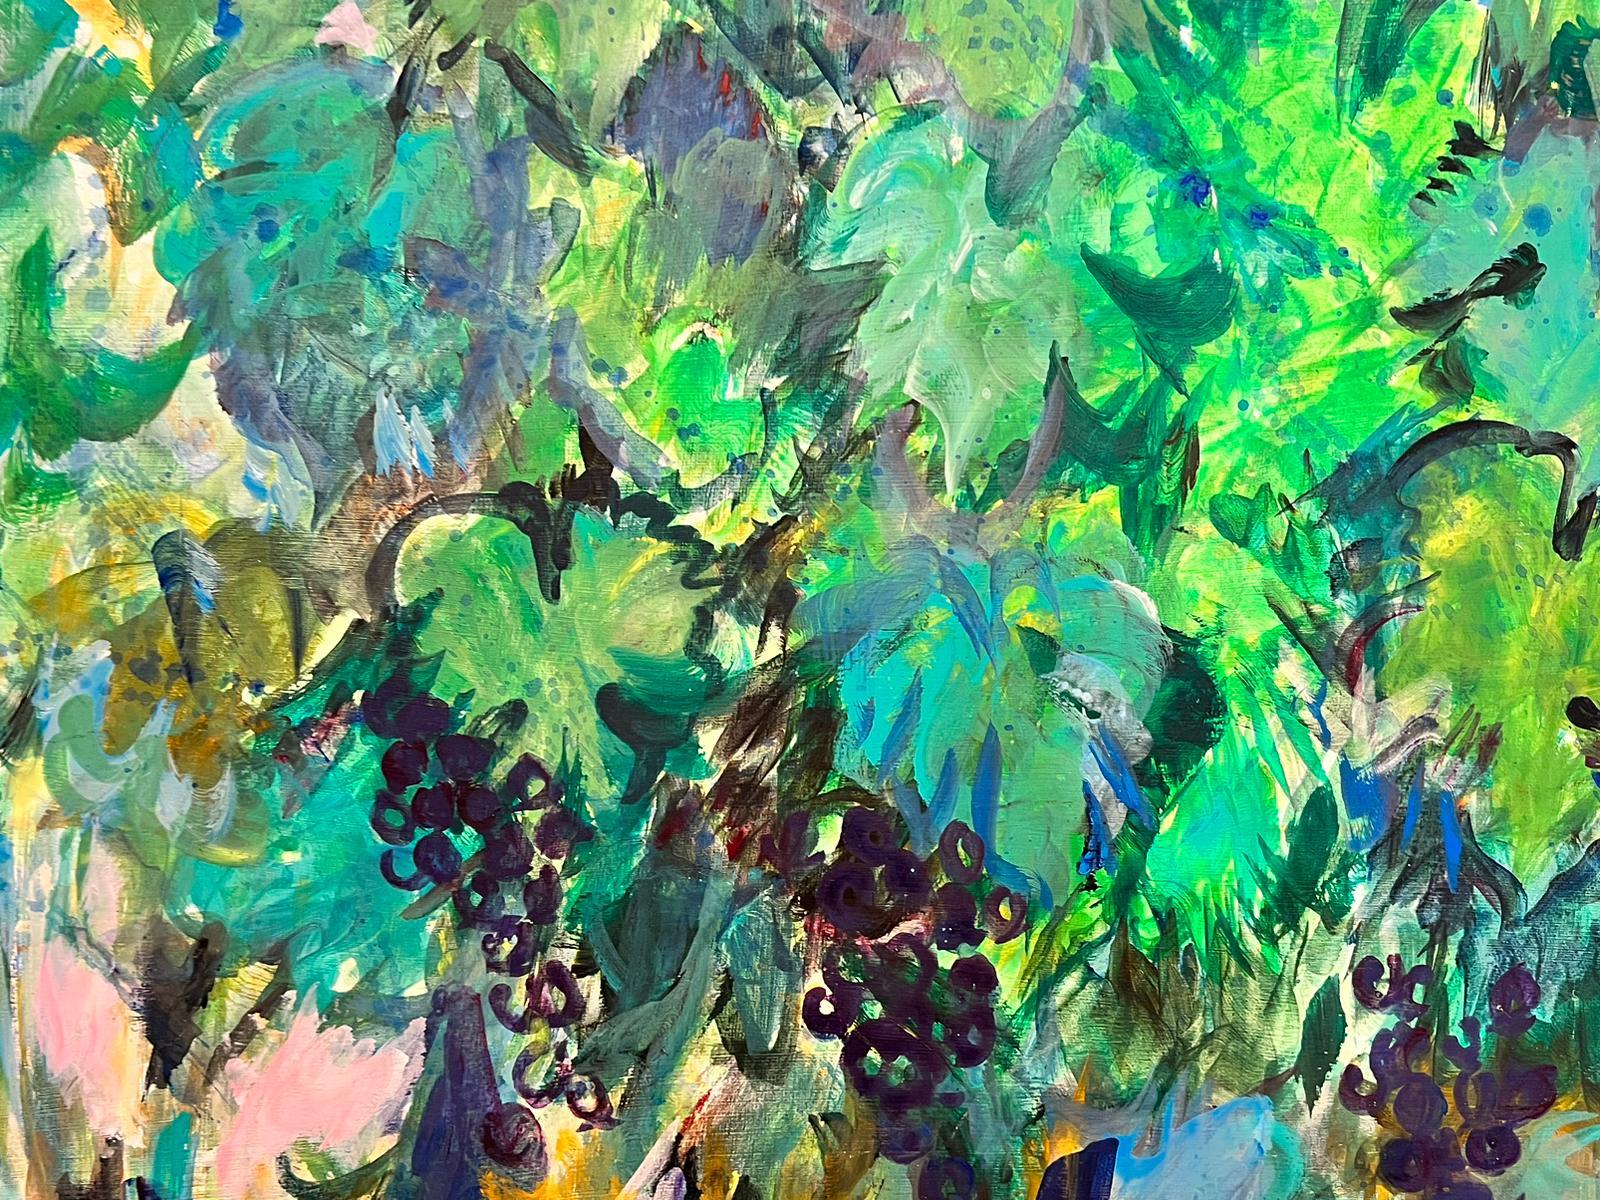 Très grandes grappes de raisins de vigne peintes à l'huile sur vignes aux couleurs vert profond et bleu - Moderne Painting par French Modernist